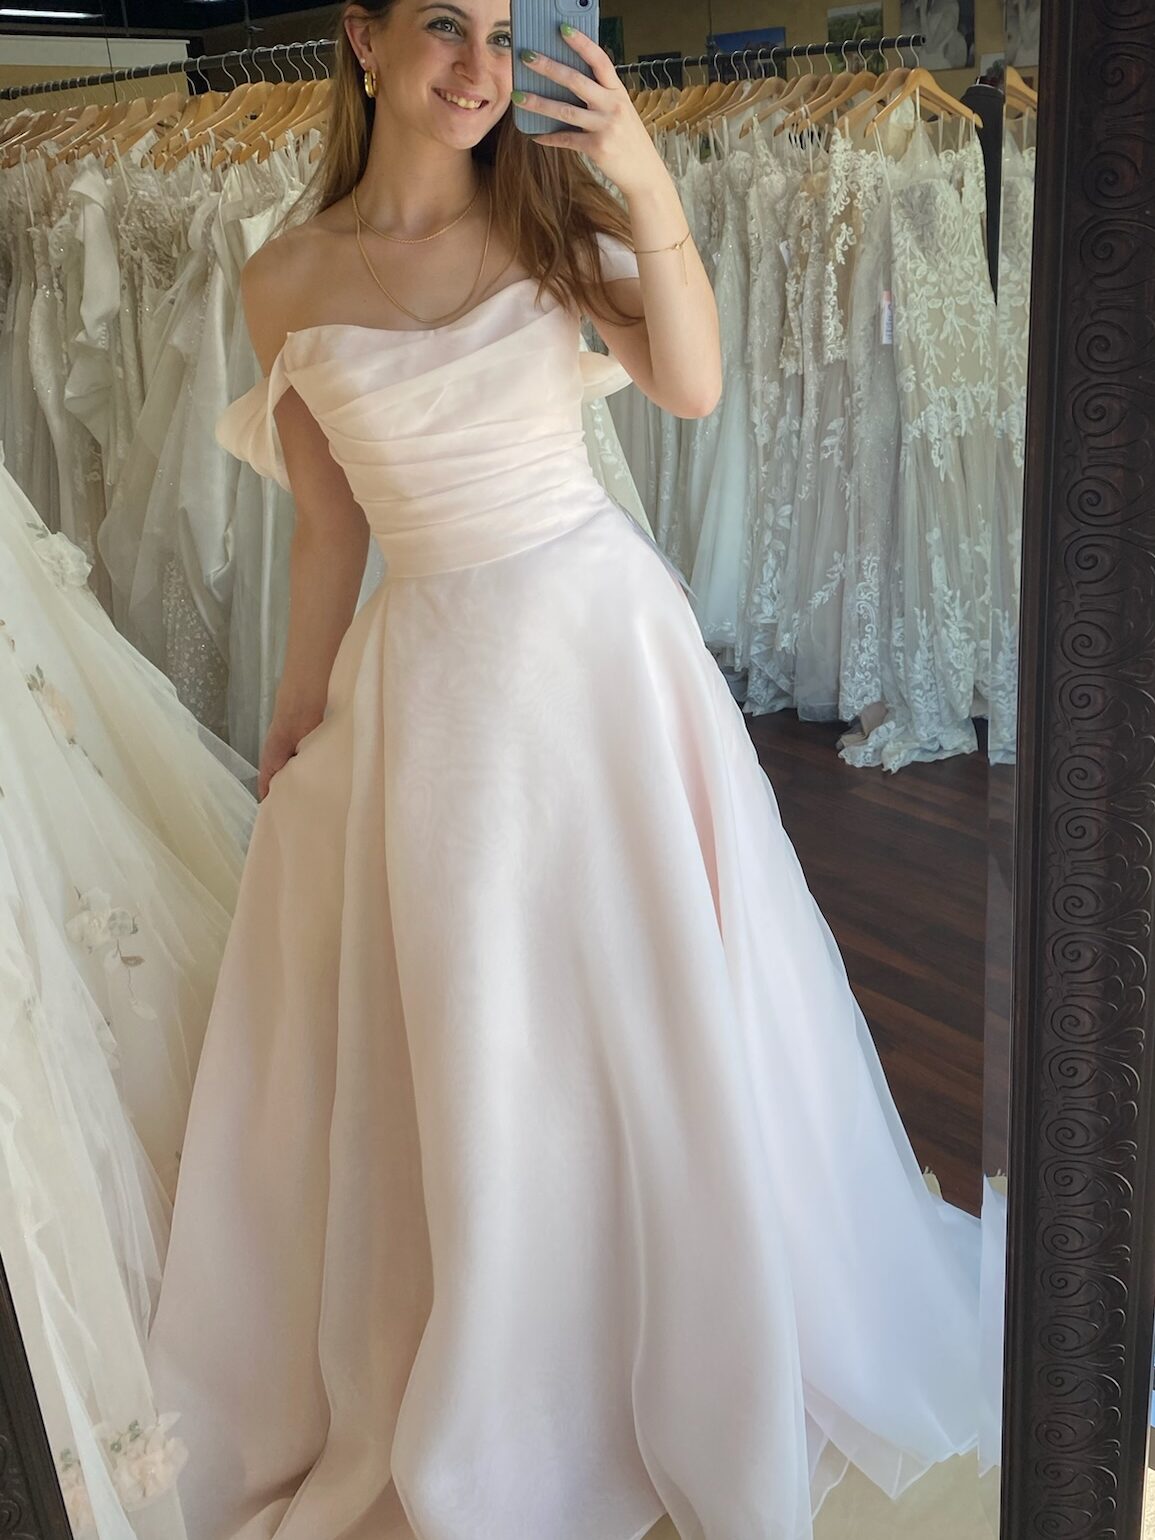 Organza, A-line wedding dress in blush